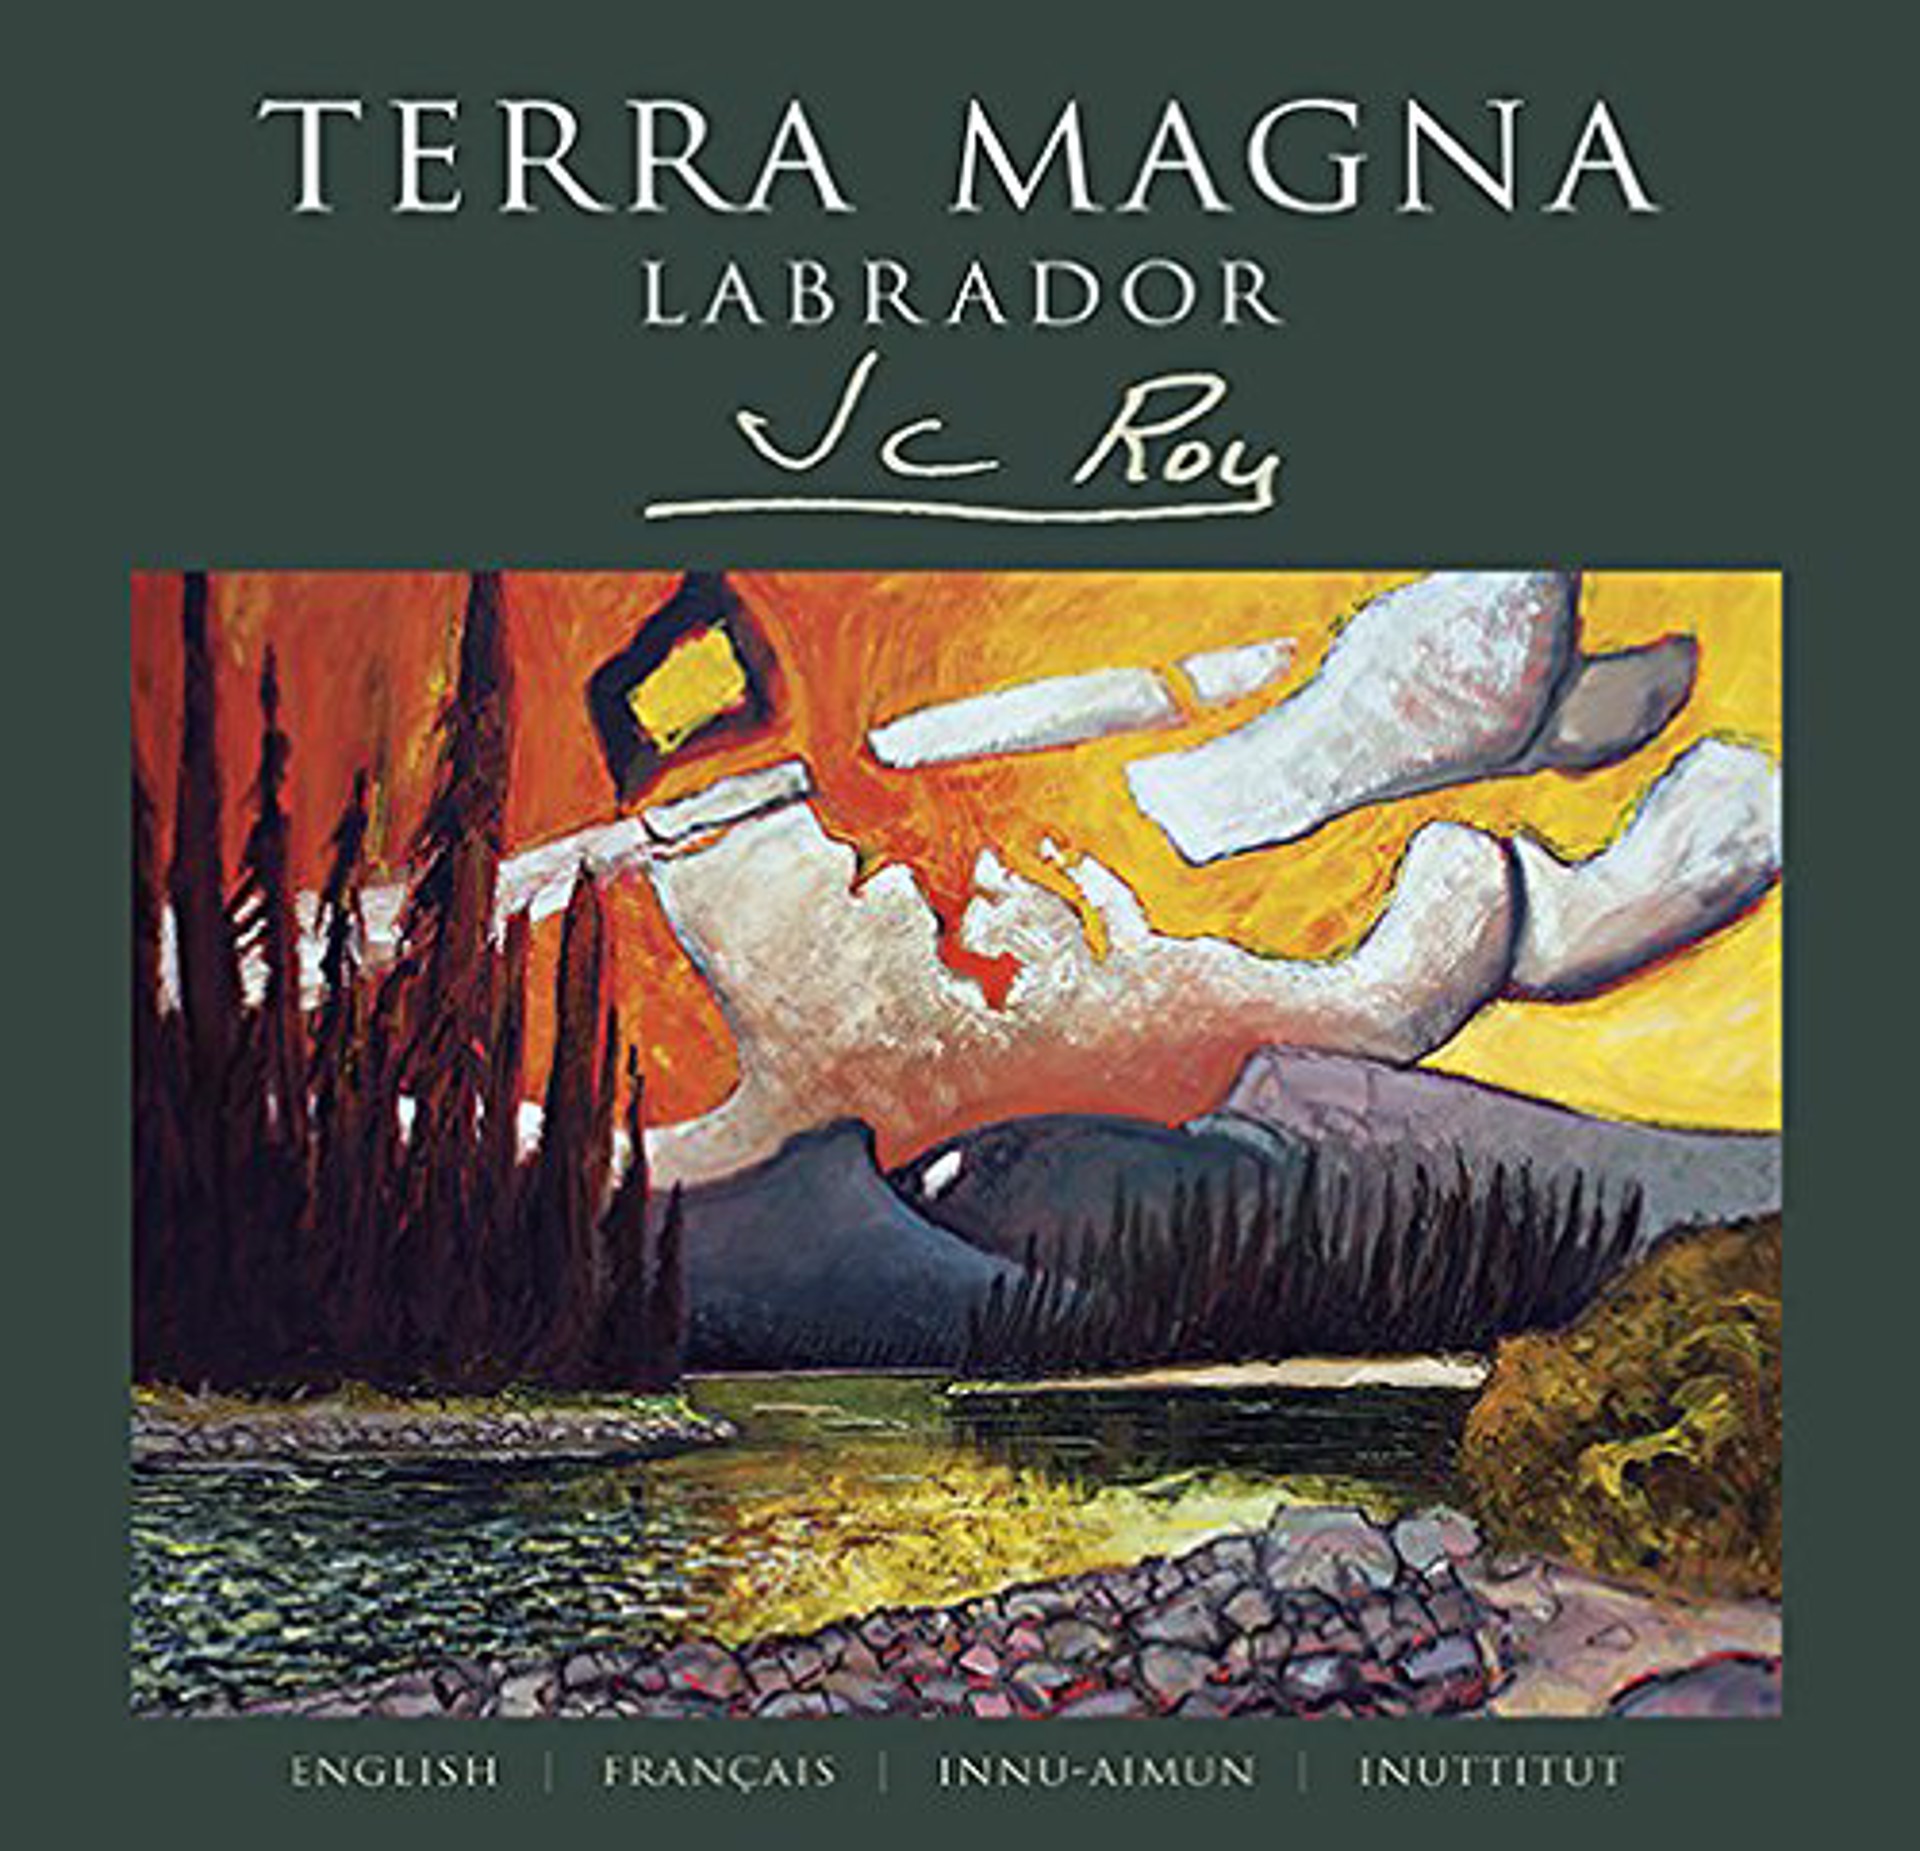 Terra Magna, Labrador, JCR book by Jean Claude Roy